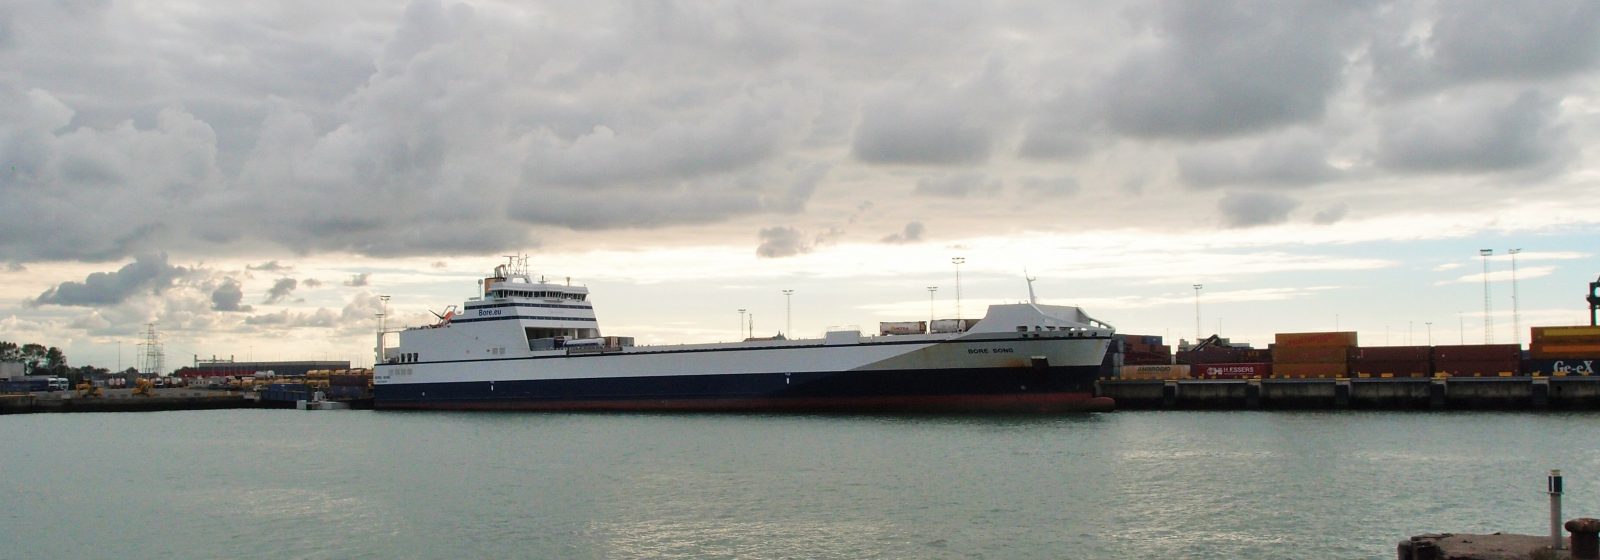 Vrachtschip 'Bore Song' aan Westerhoofdterminal in Zeebrugge